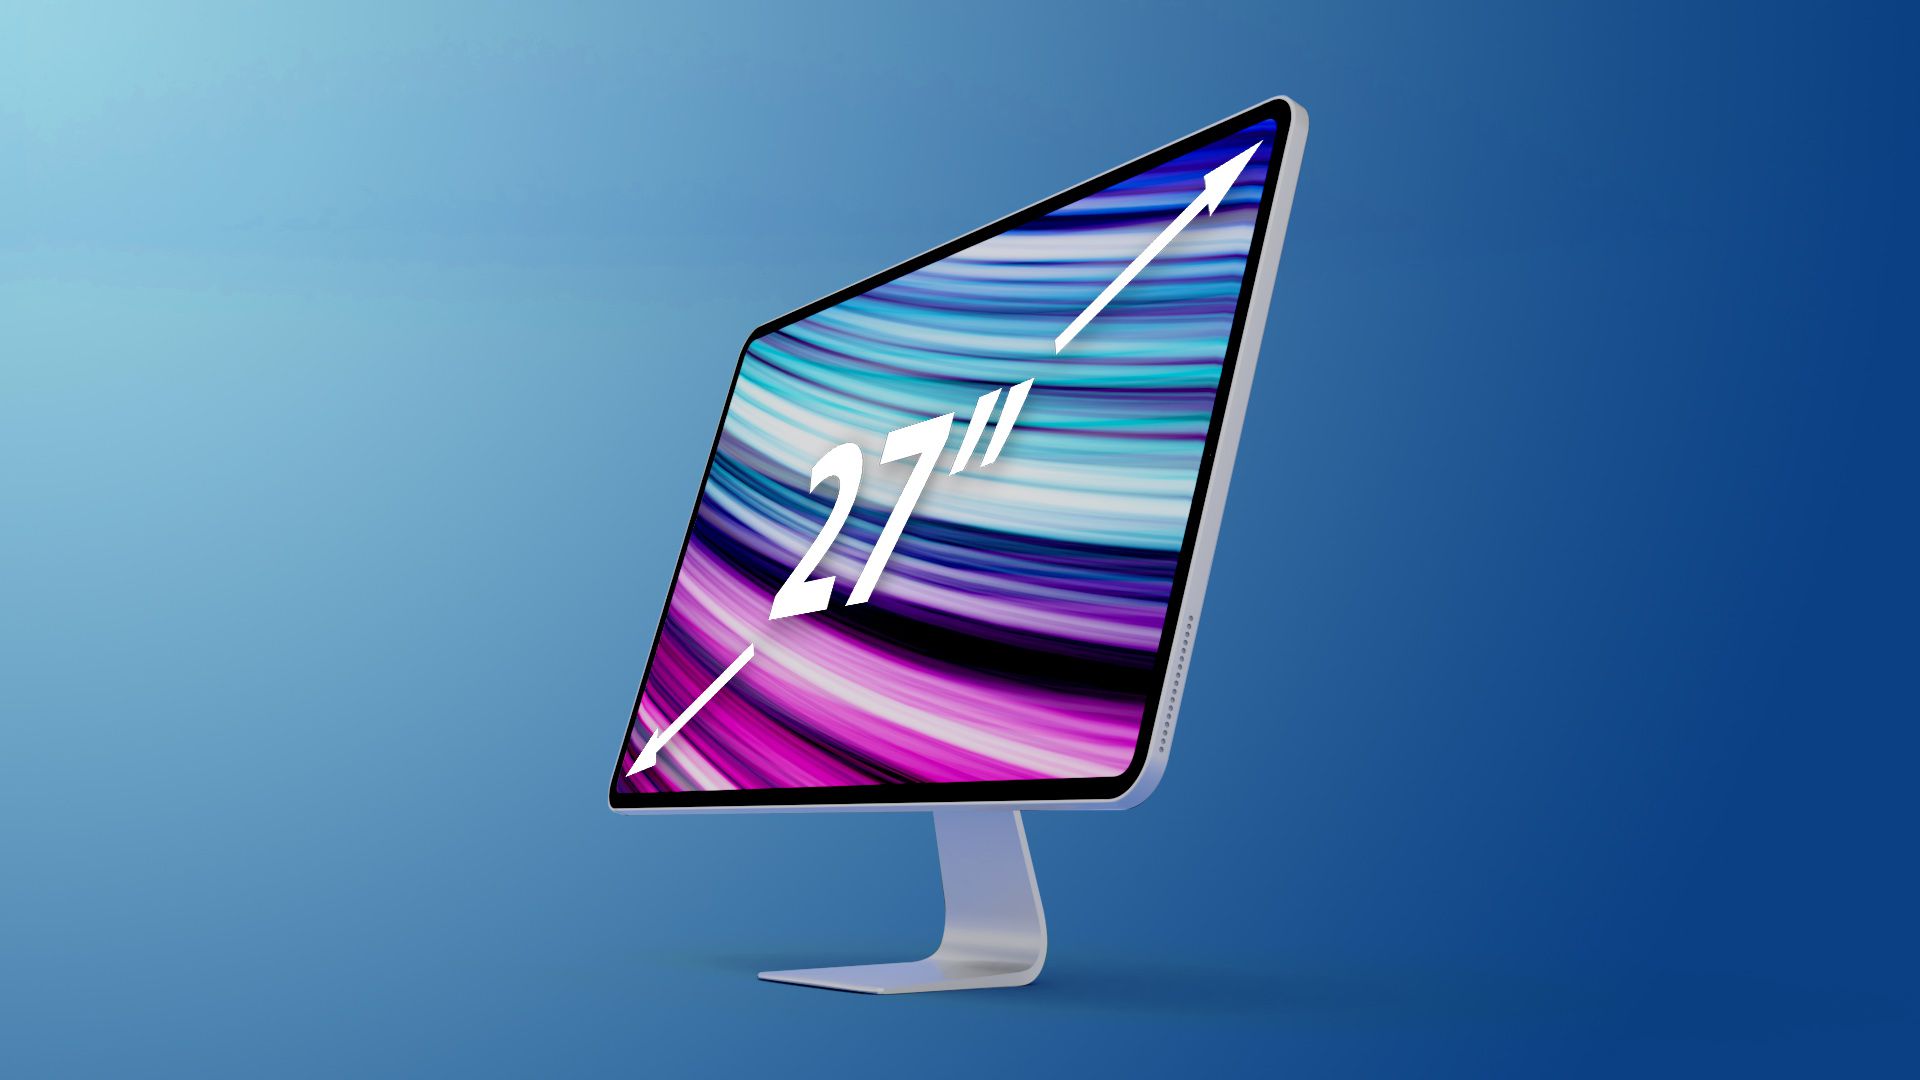 Leaked : En 2022, Apple lancera un iMac Pro de 27 pouces avec des puces M1 Pro/Max, un écran Mini-LED et un prix supérieur à 2 000 $